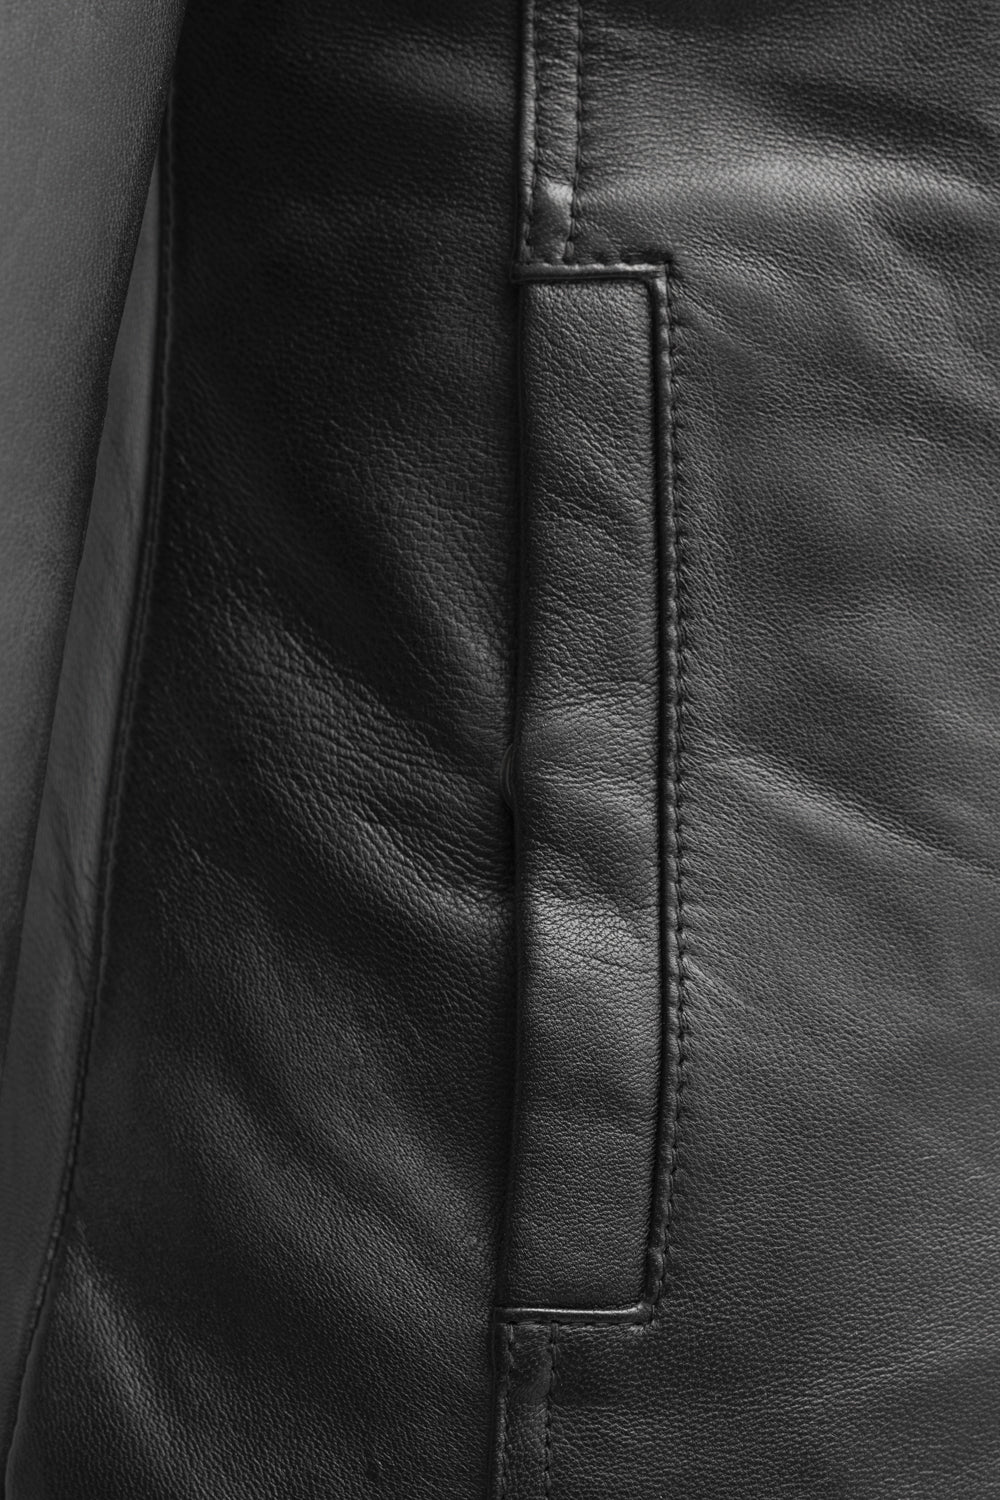 Imelda - A ladies lambskin leather jacket